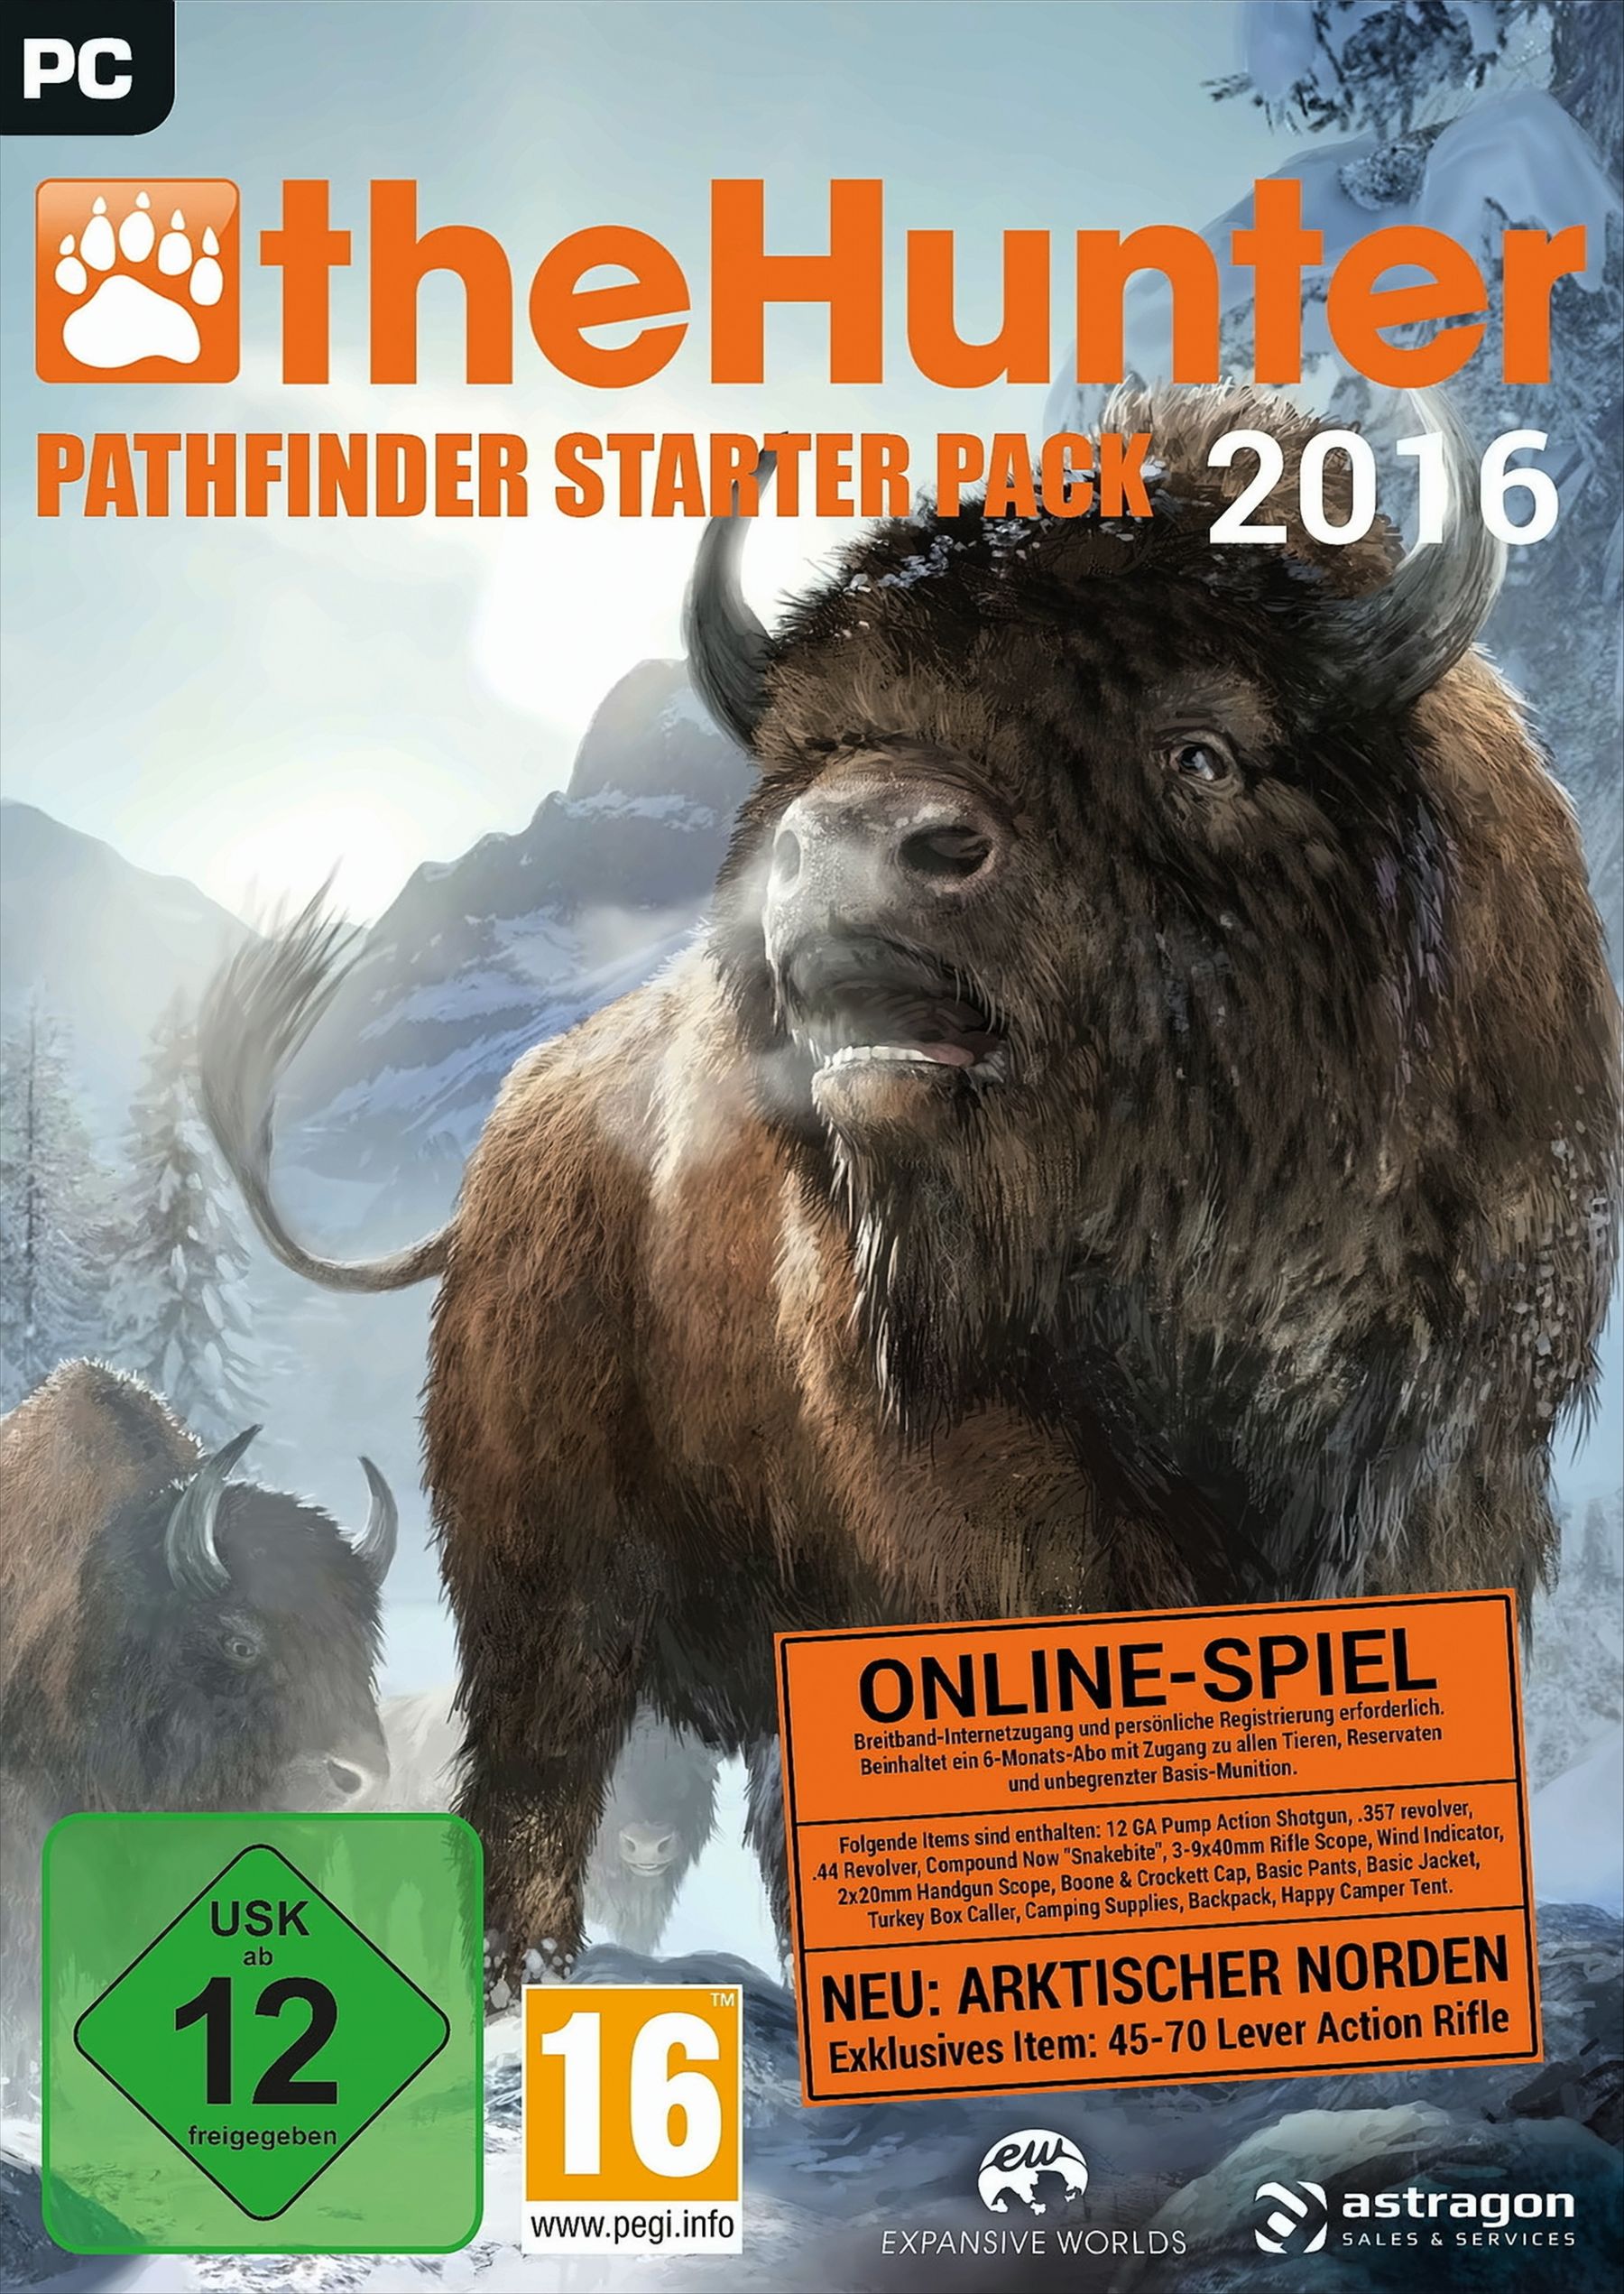 theHunter 2016 - Pathfinder Starter Pack von astragon Sales & Services